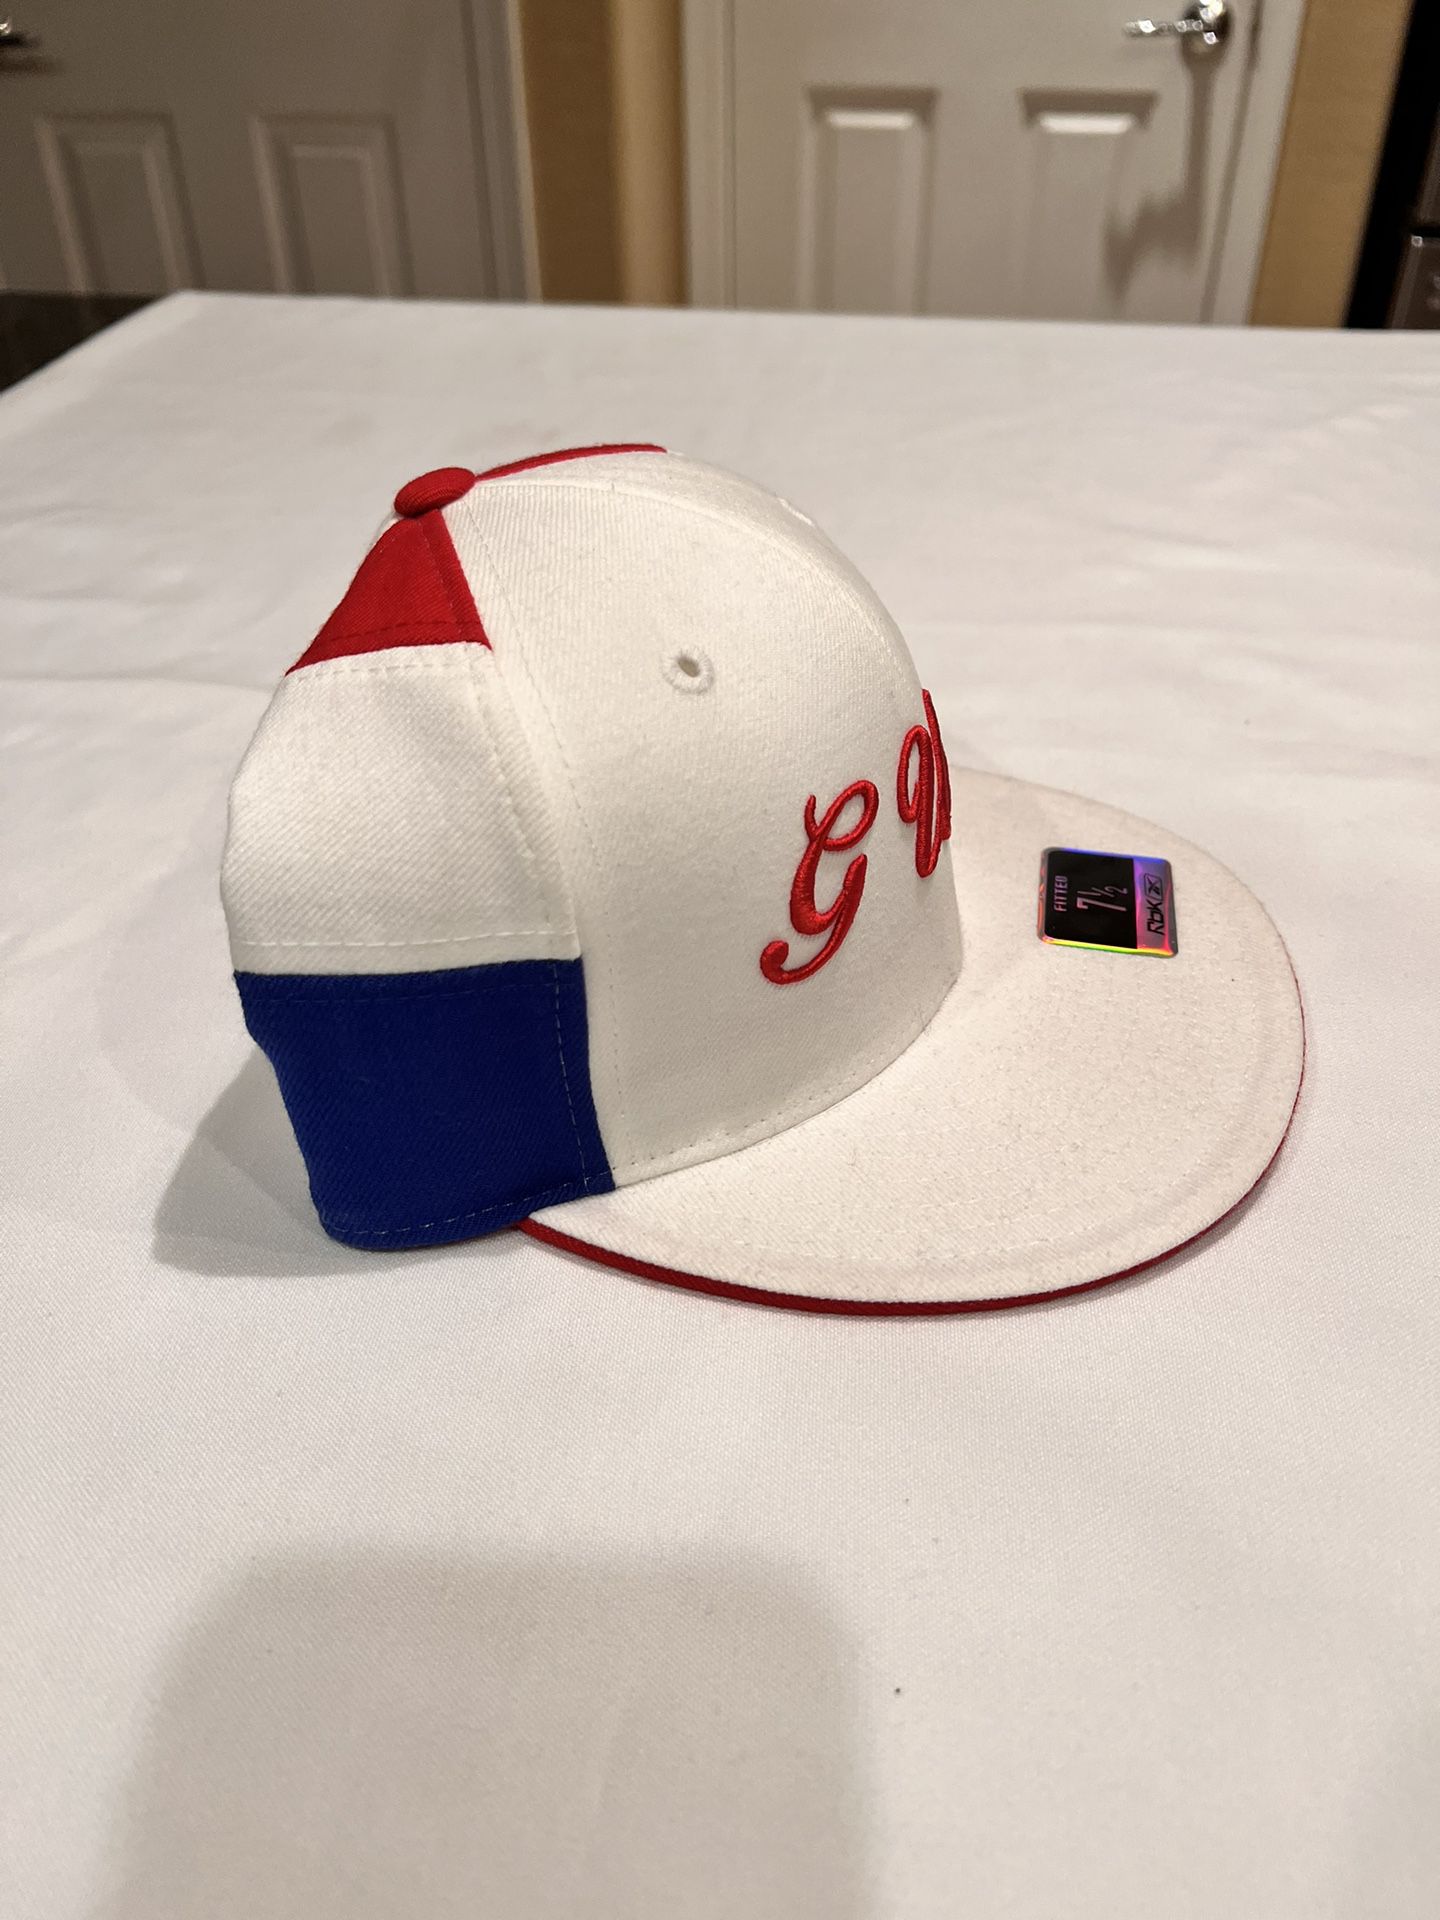 G-Unit Reebok Fitted Cap Hat 50 Cent 7 1/4 Vintage Hip Hop